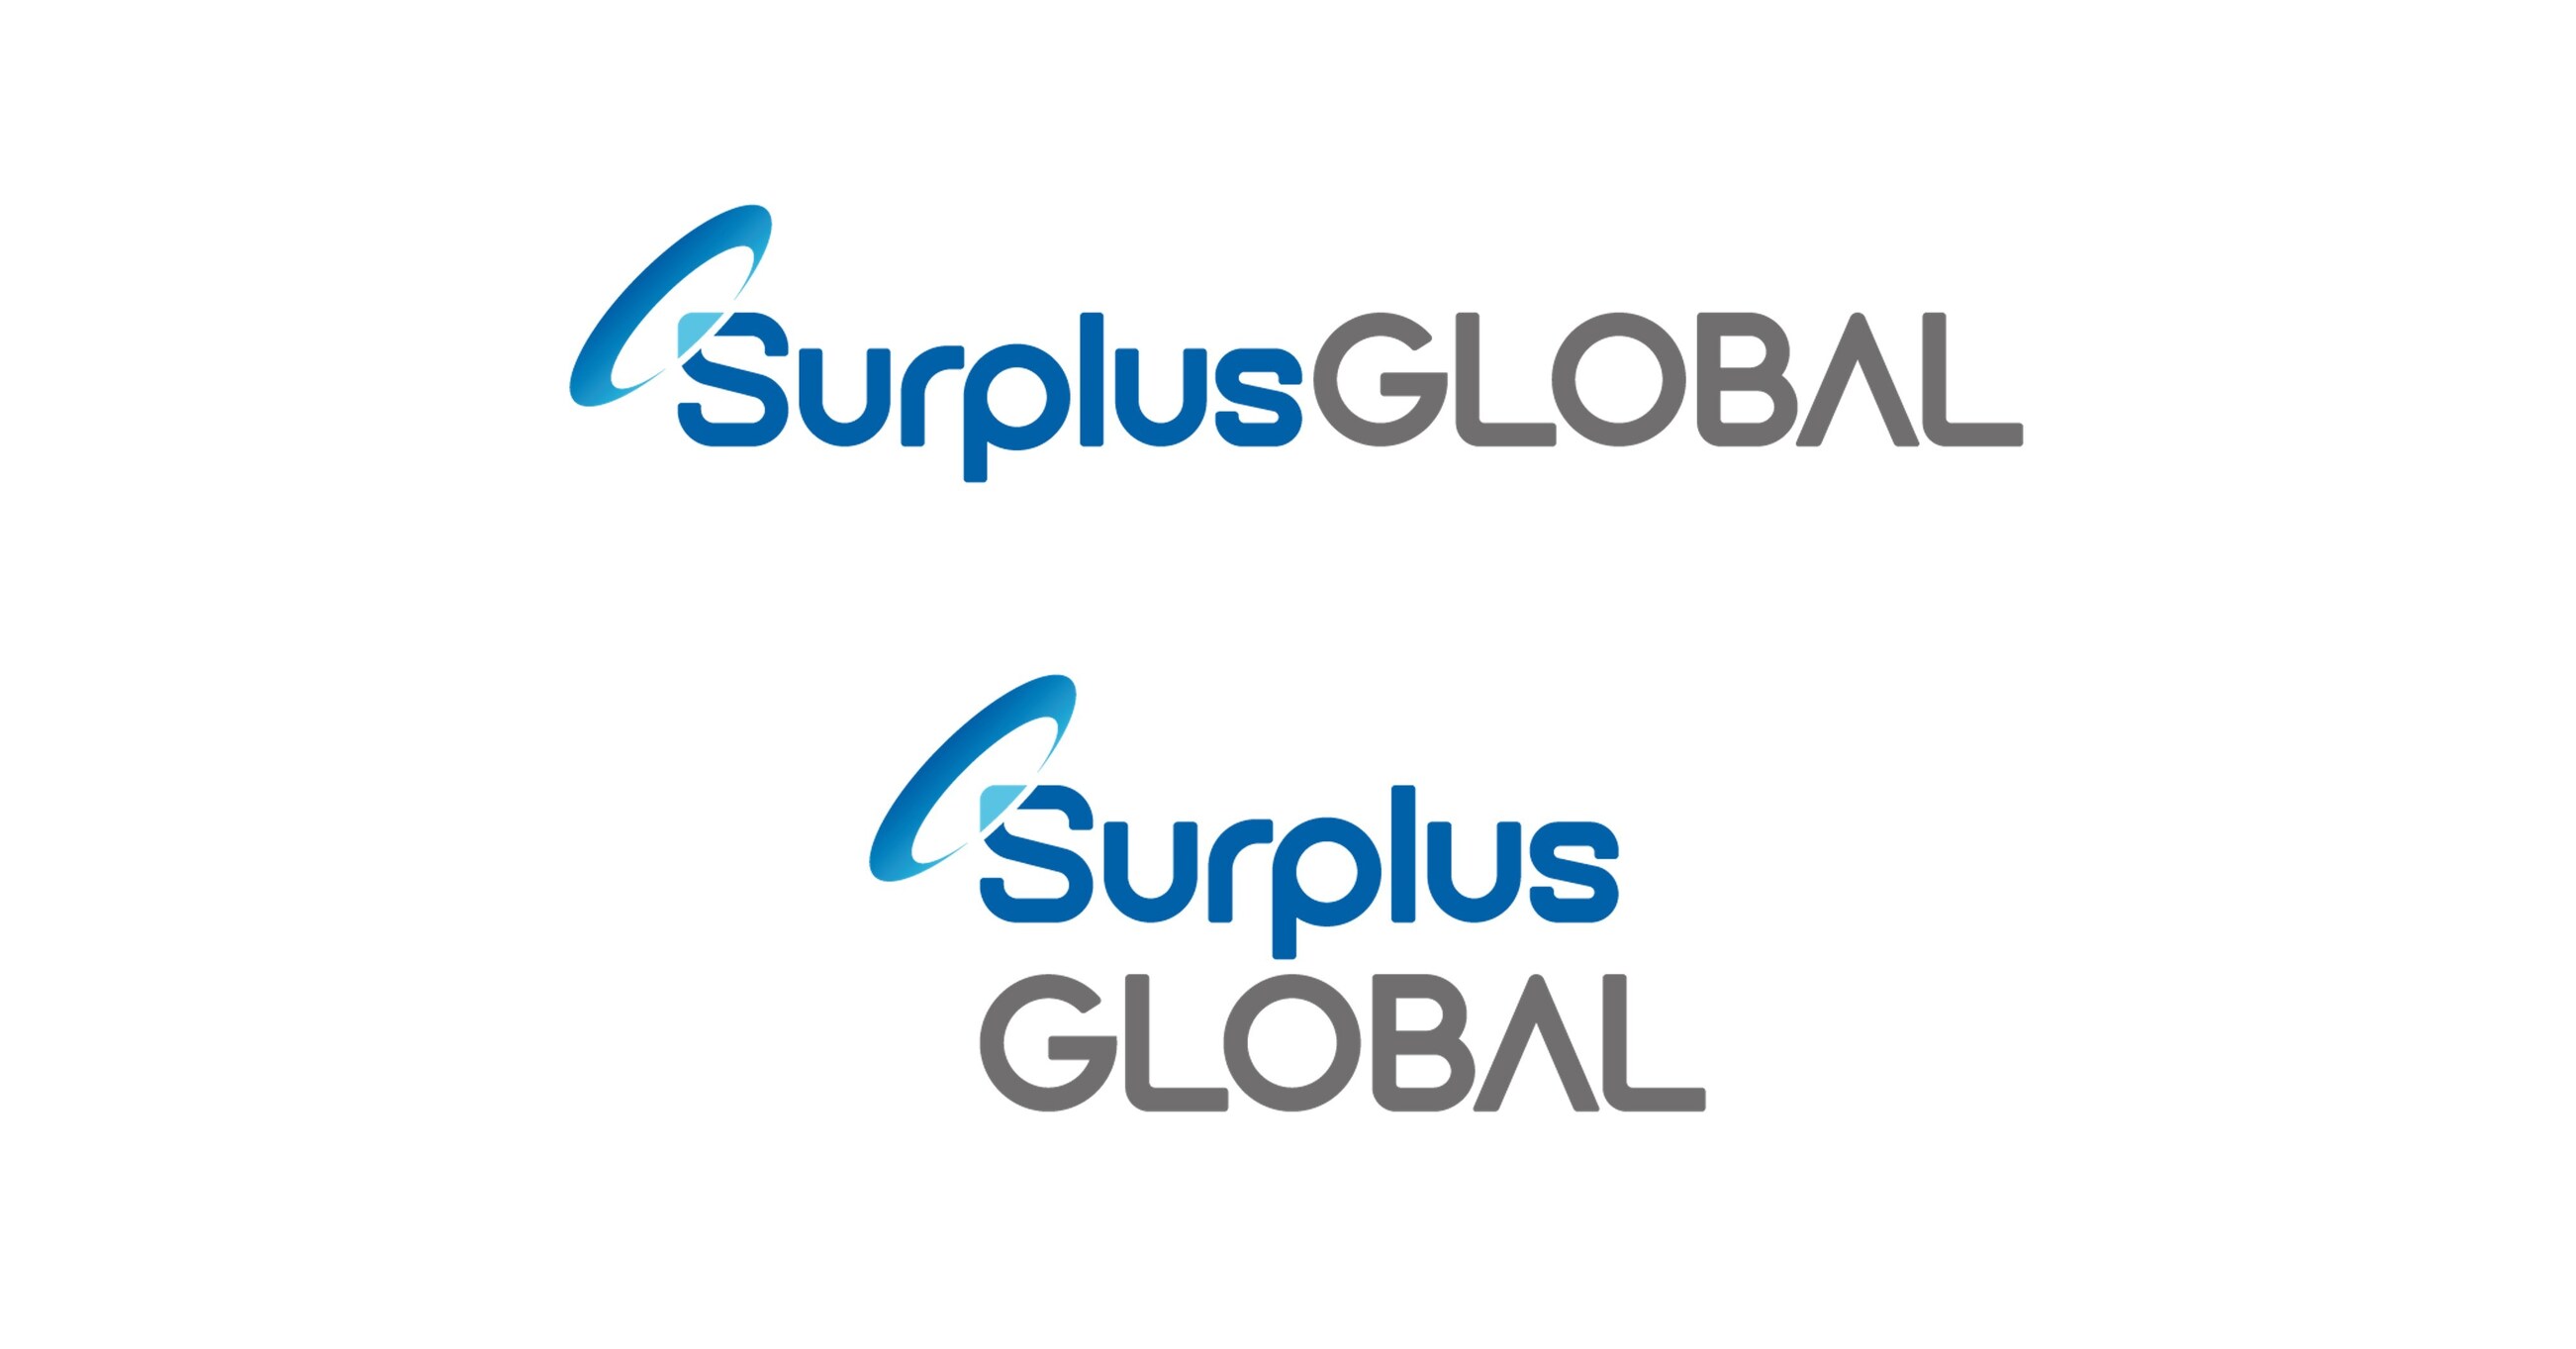 SurplusGLOBAL führt neue Unternehmenidentityät ein：世界上有一个遗产Halbleiteraussrüstung und teilen！